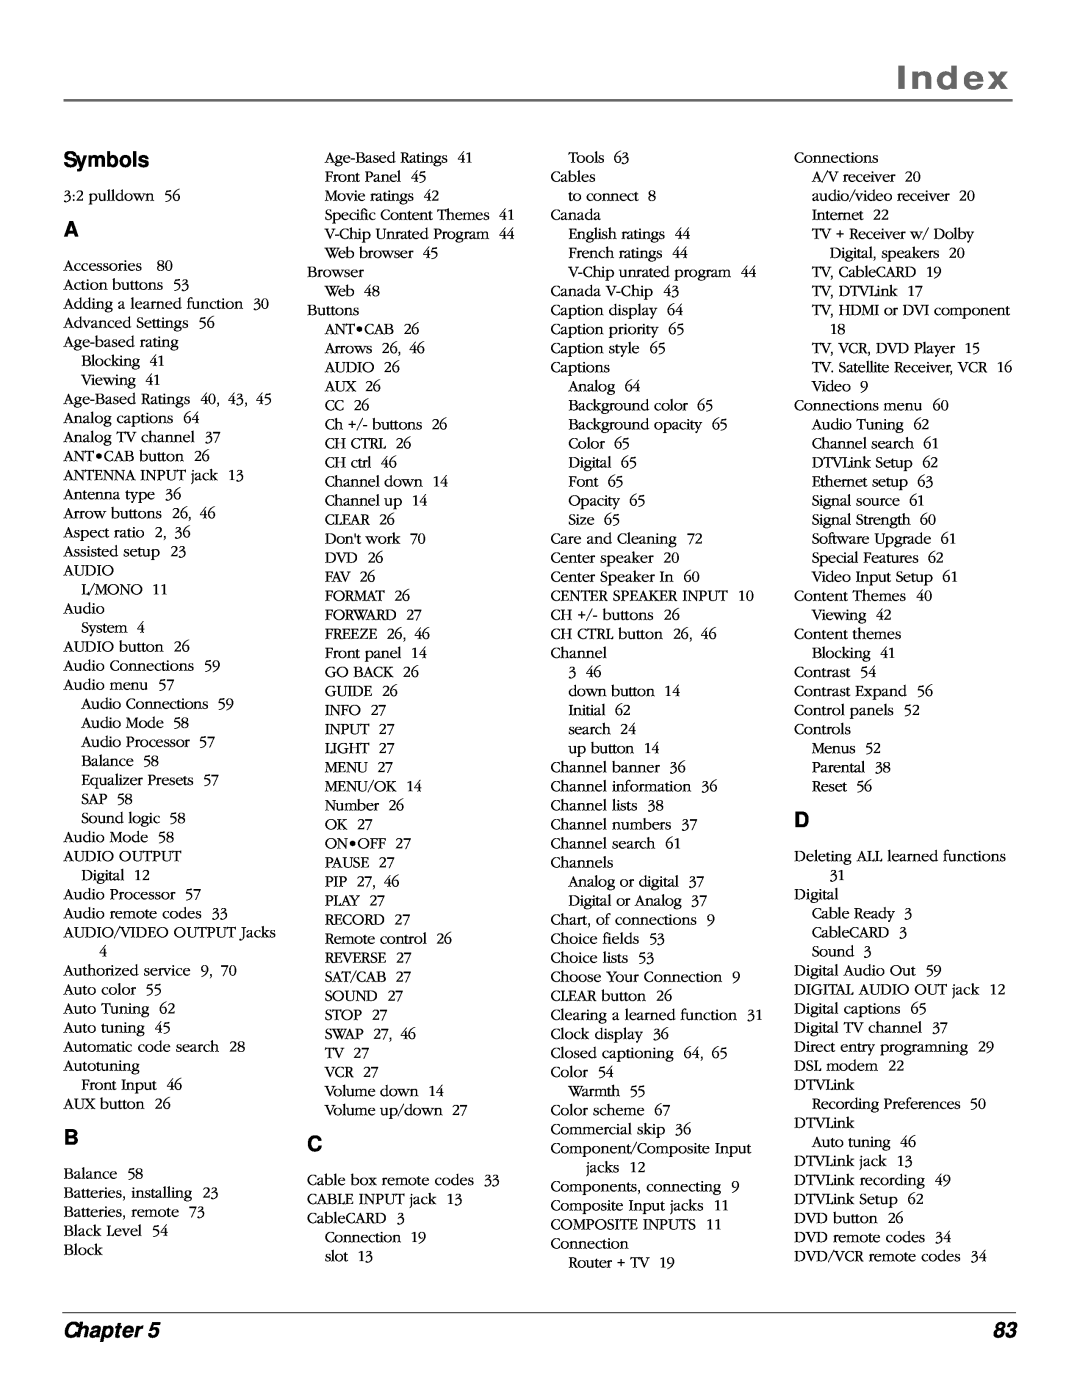 RCA scenium manual Index, Symbols, Chapter 